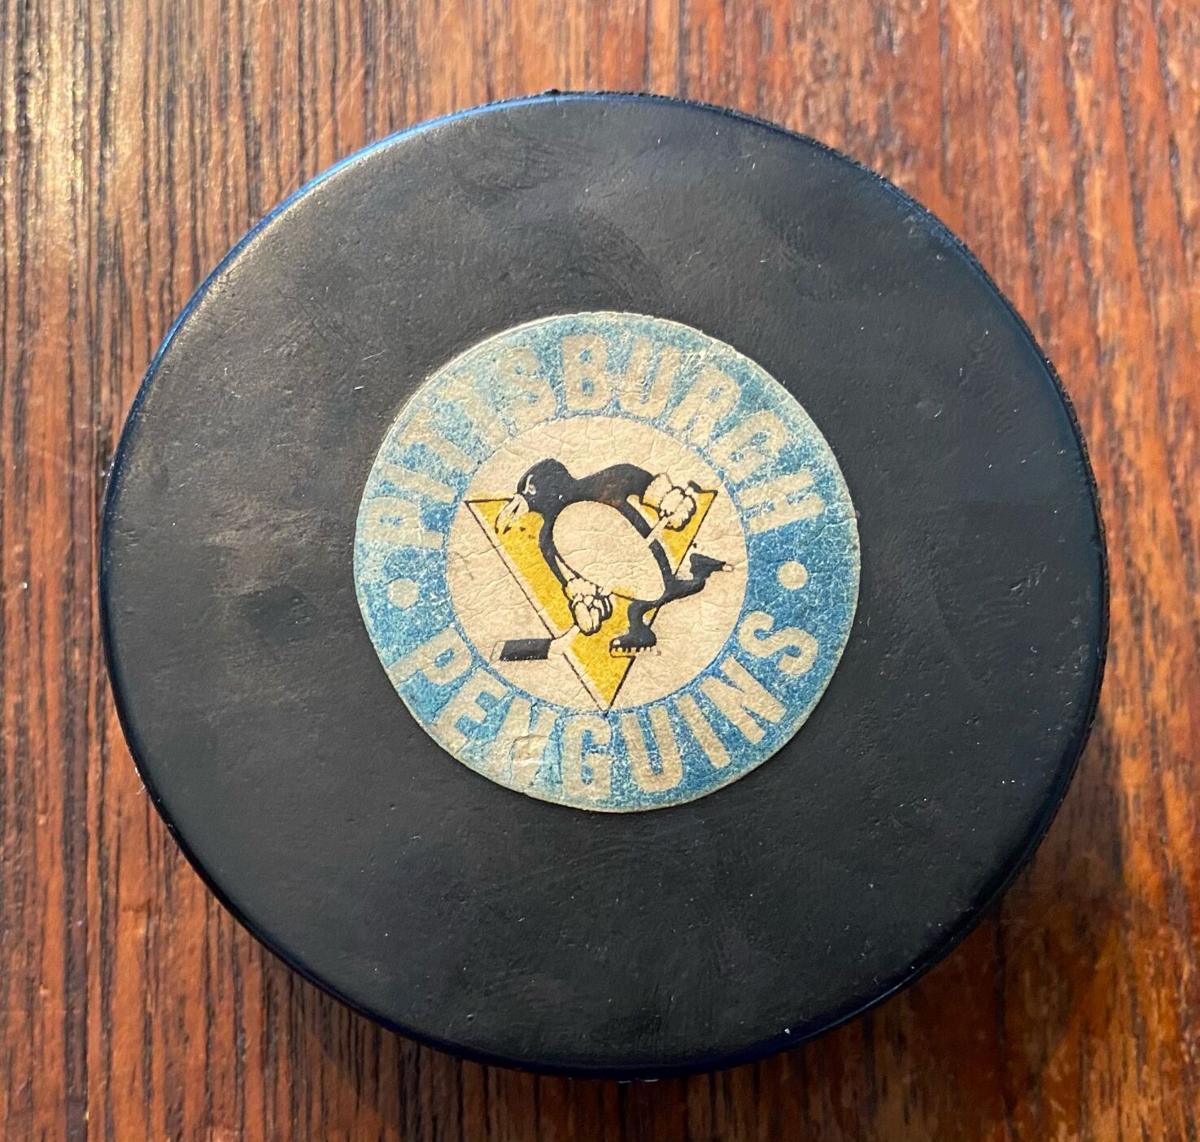 Les Binkley Pittsburgh Penguins Autographed 1967 Expansion Retro